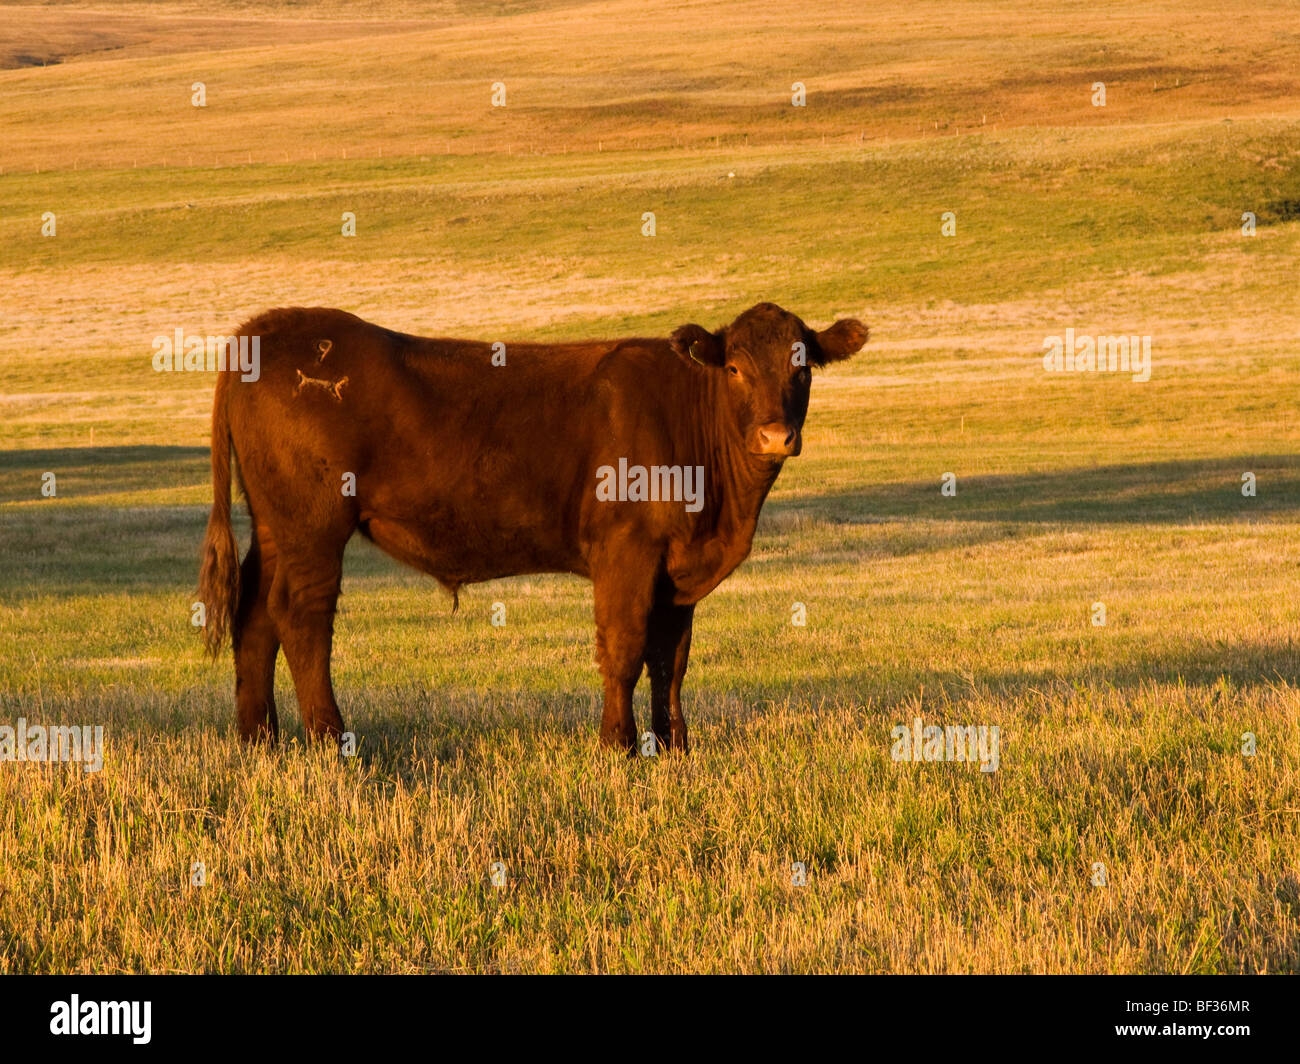 Ganadería - Red Angus steer en un campo agrícola recortada al amanecer / de Alberta, Canadá. Foto de stock